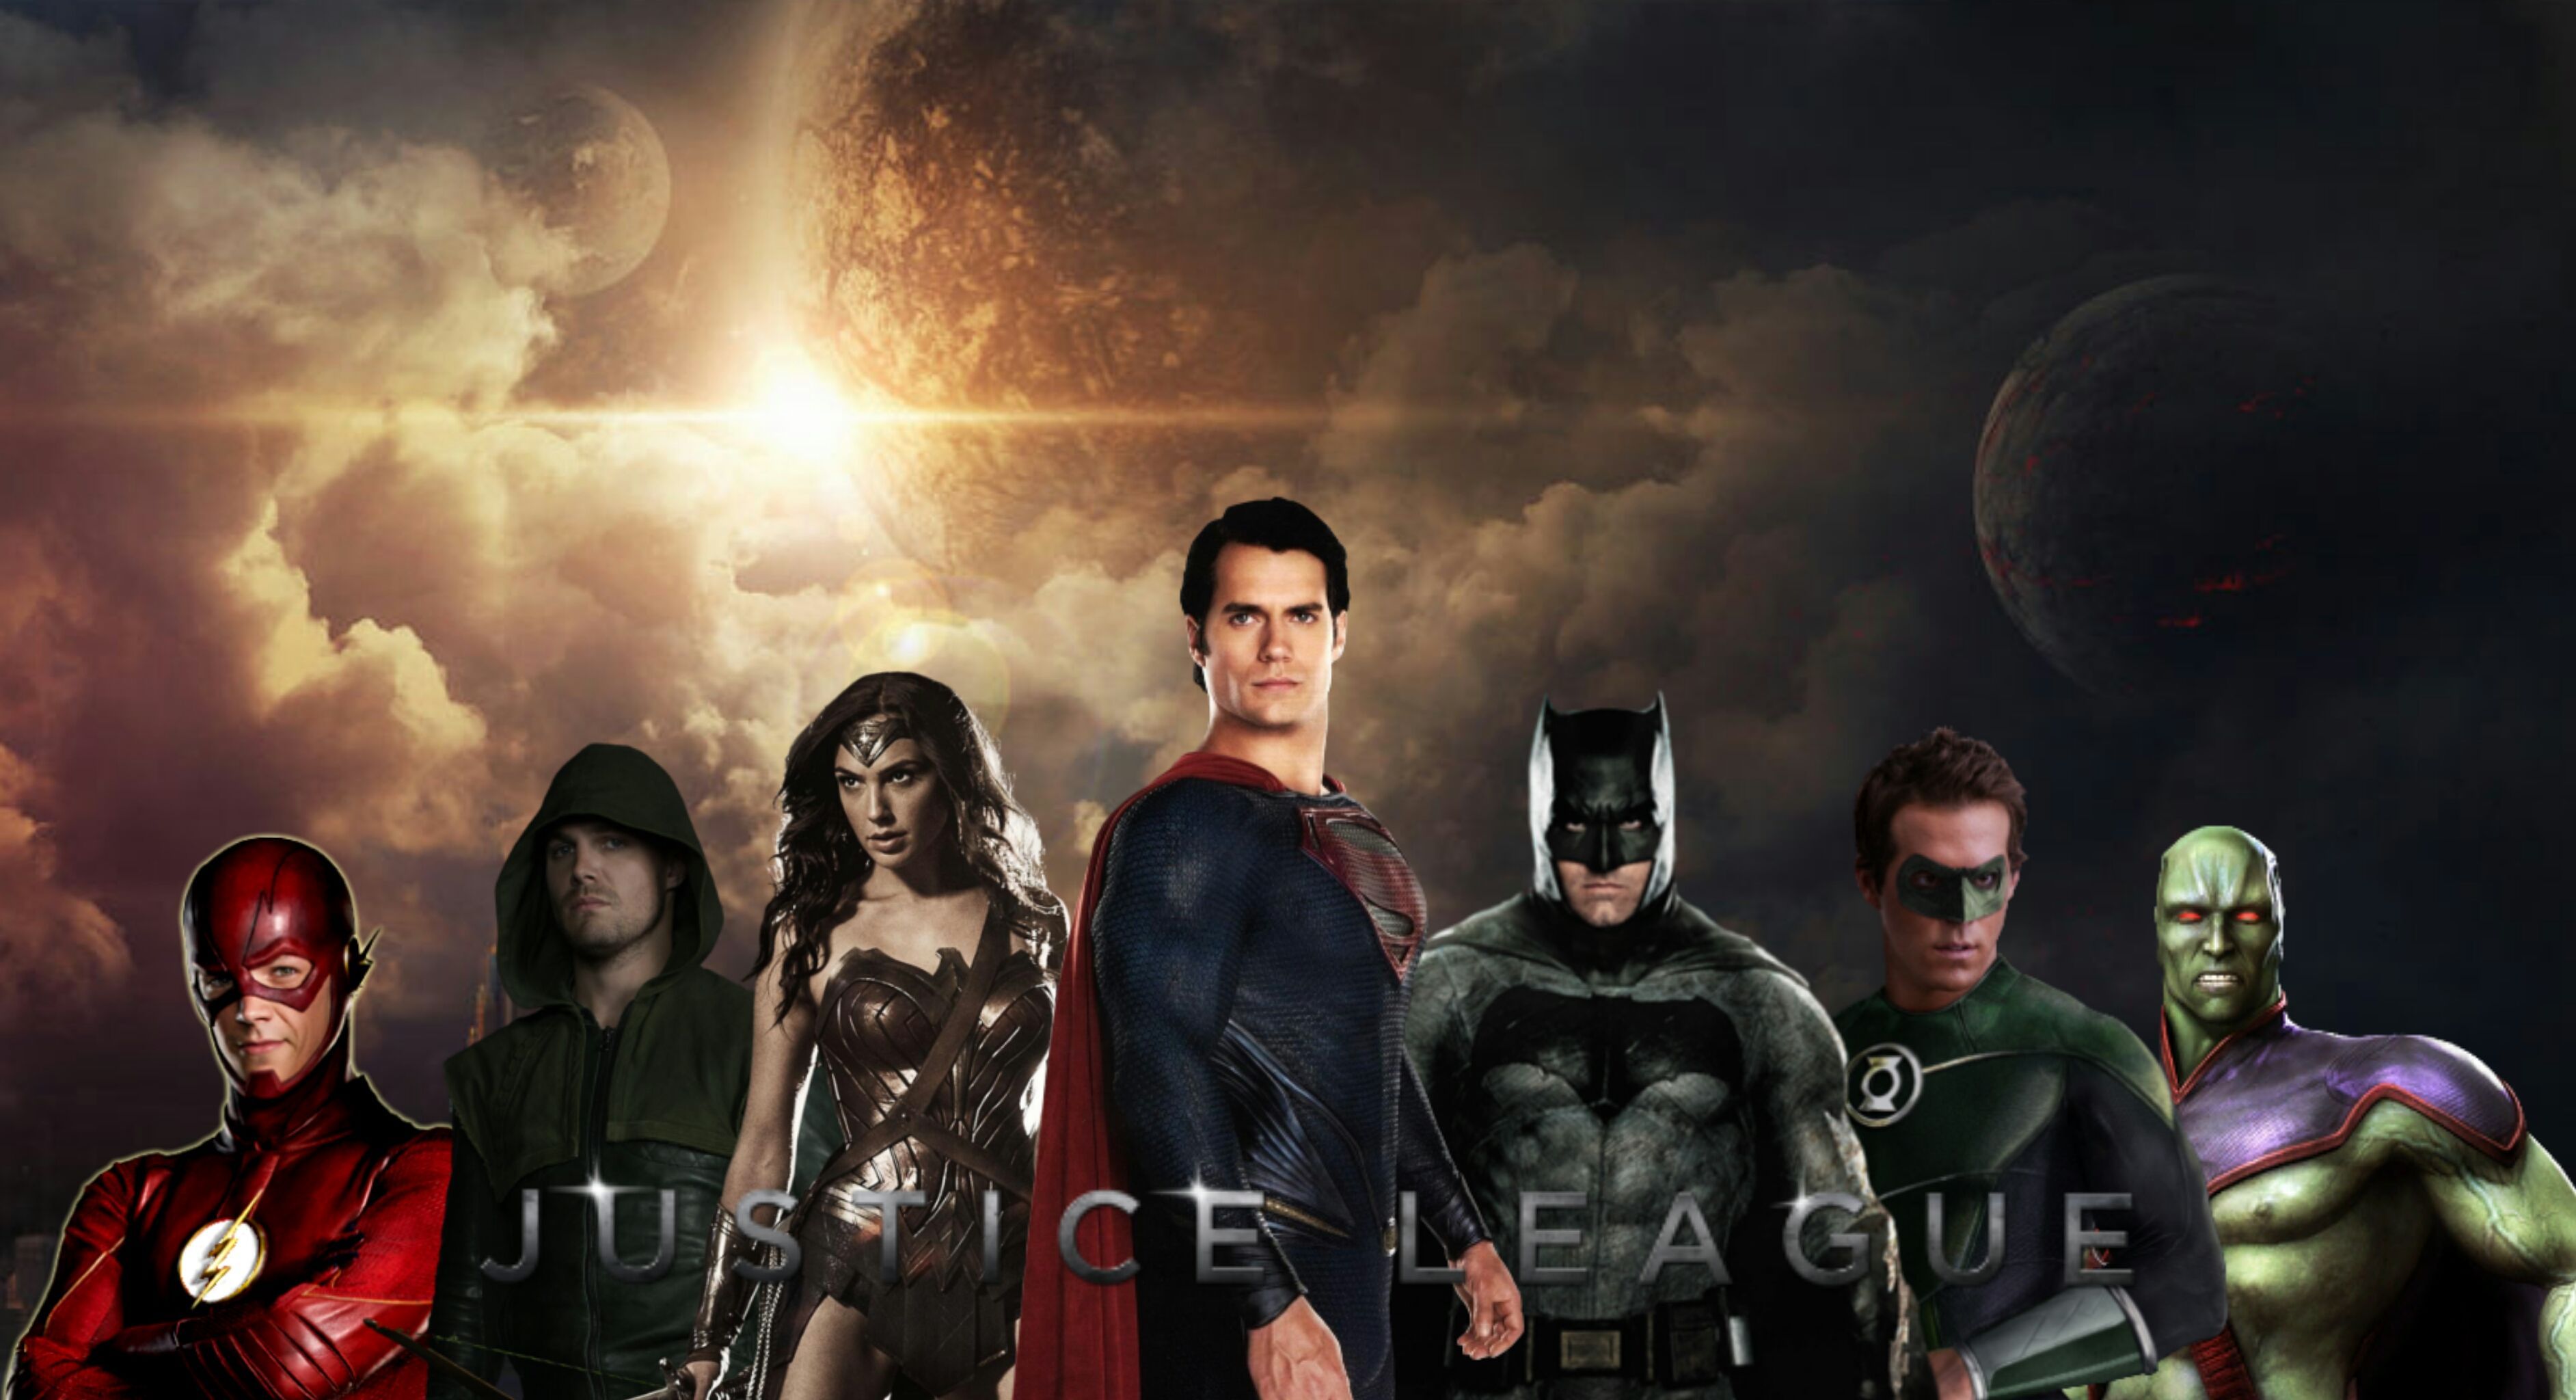 Justice League Wallpaper Poster by MrVideo-VidMan on DeviantArt